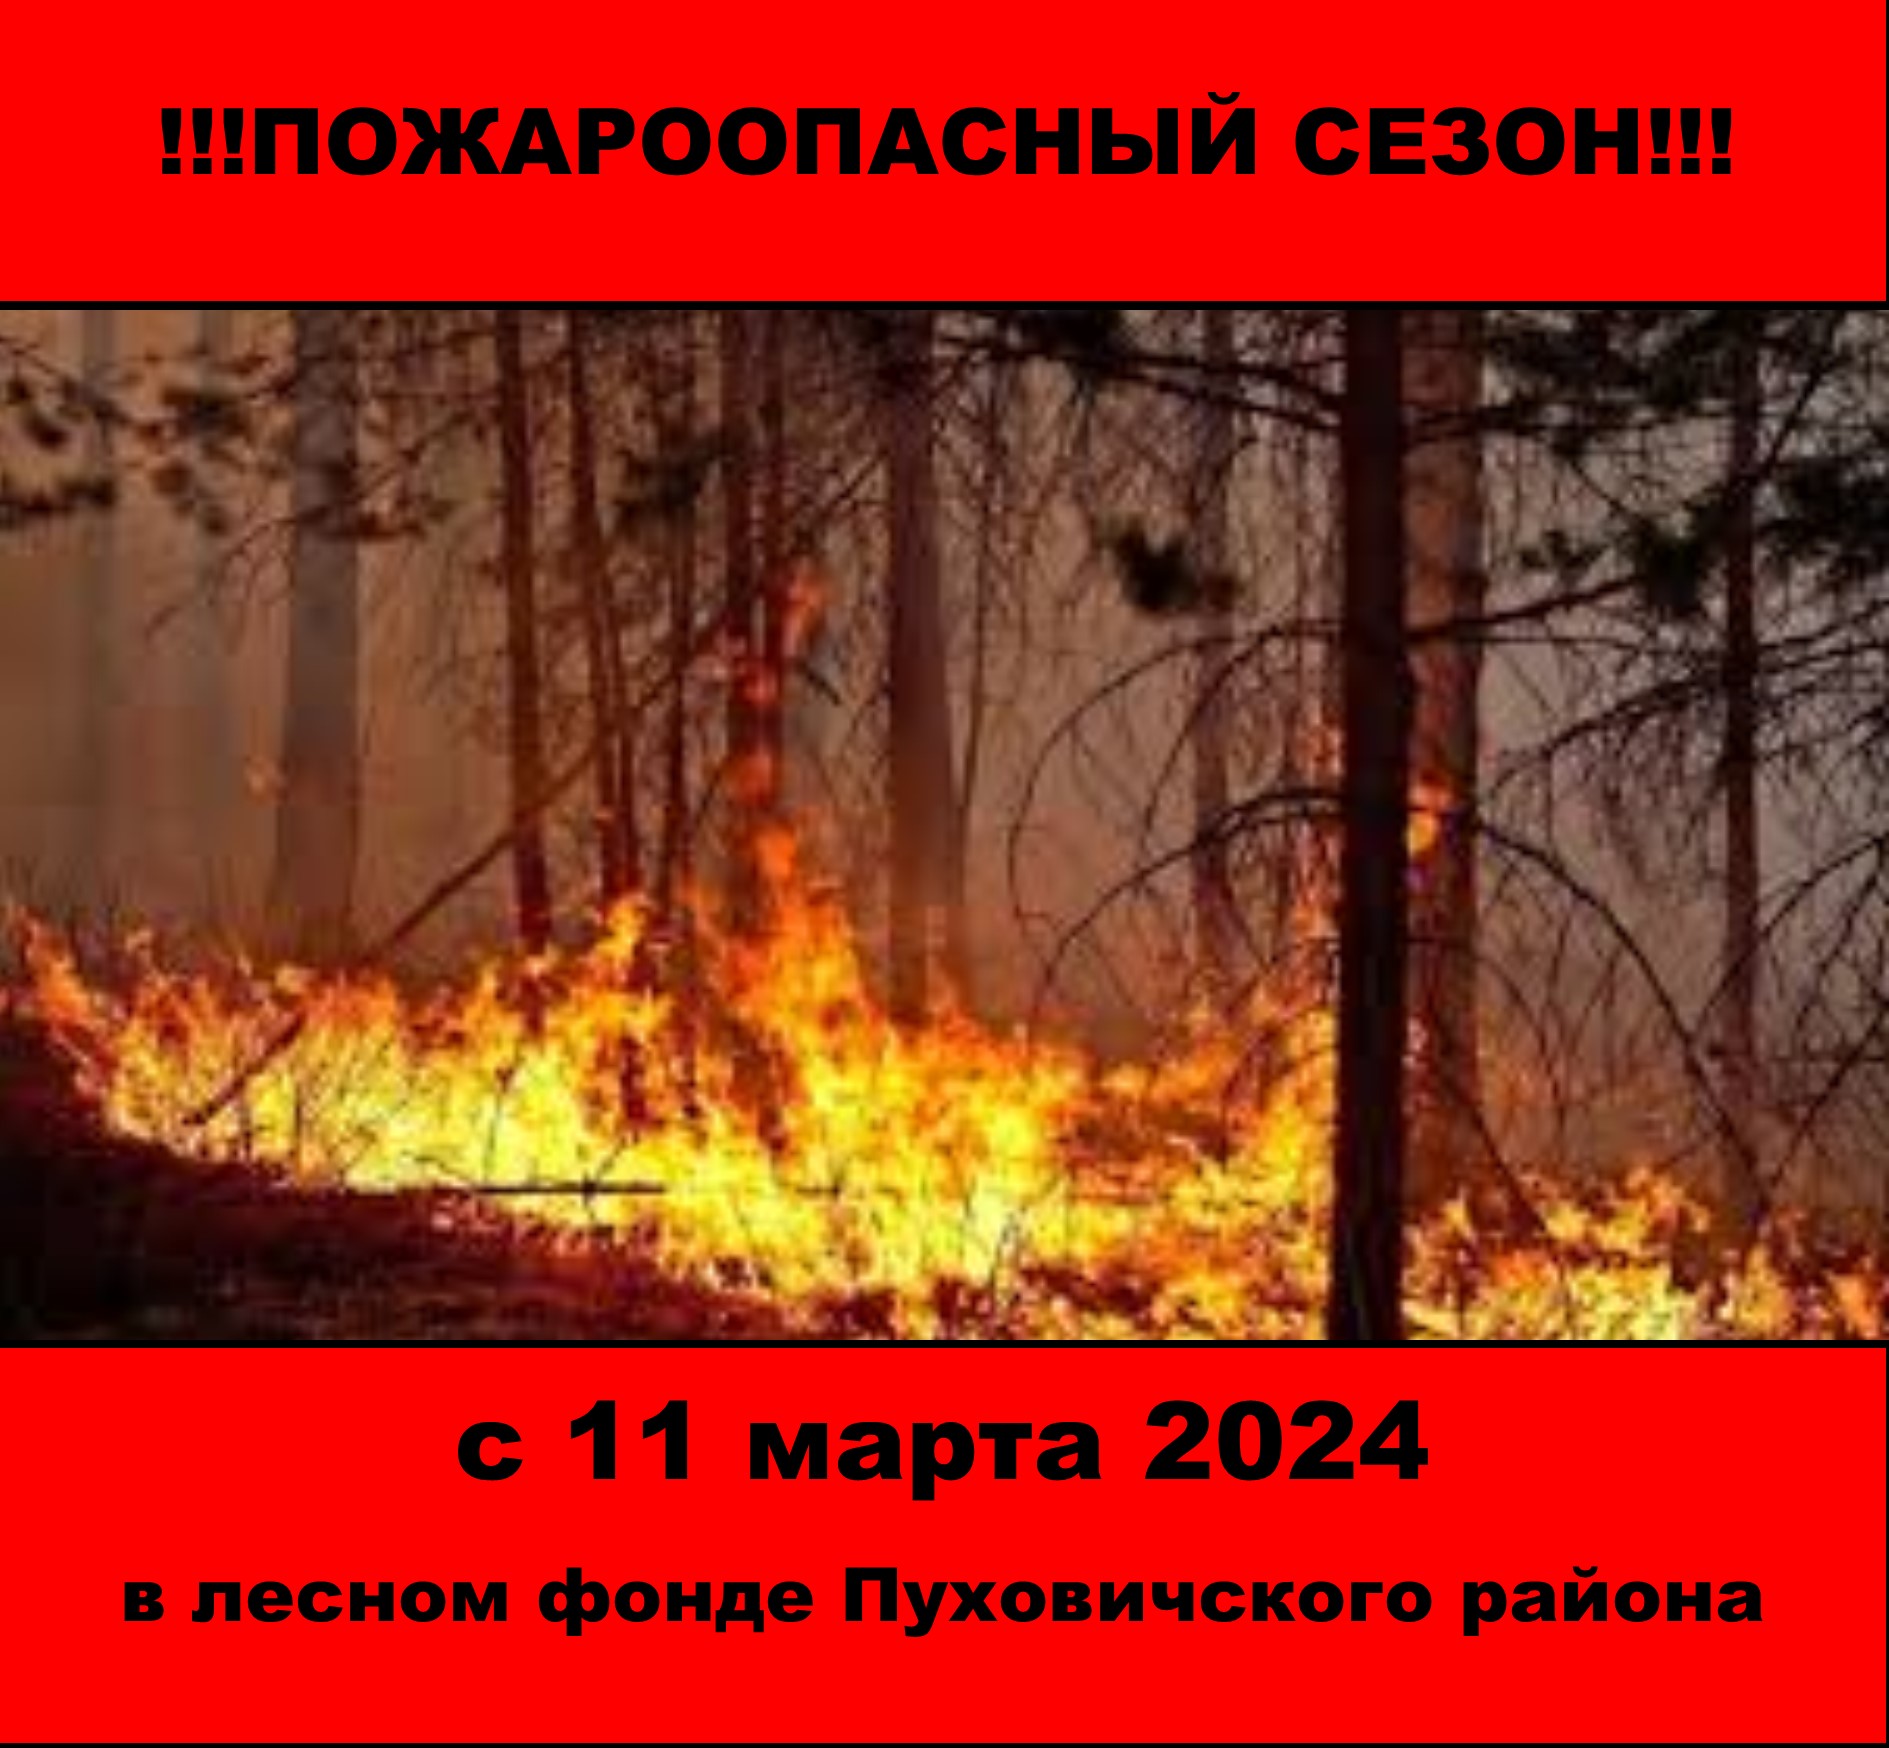 Начало пожароопасного сезона в лесном фонде Пуховичского района